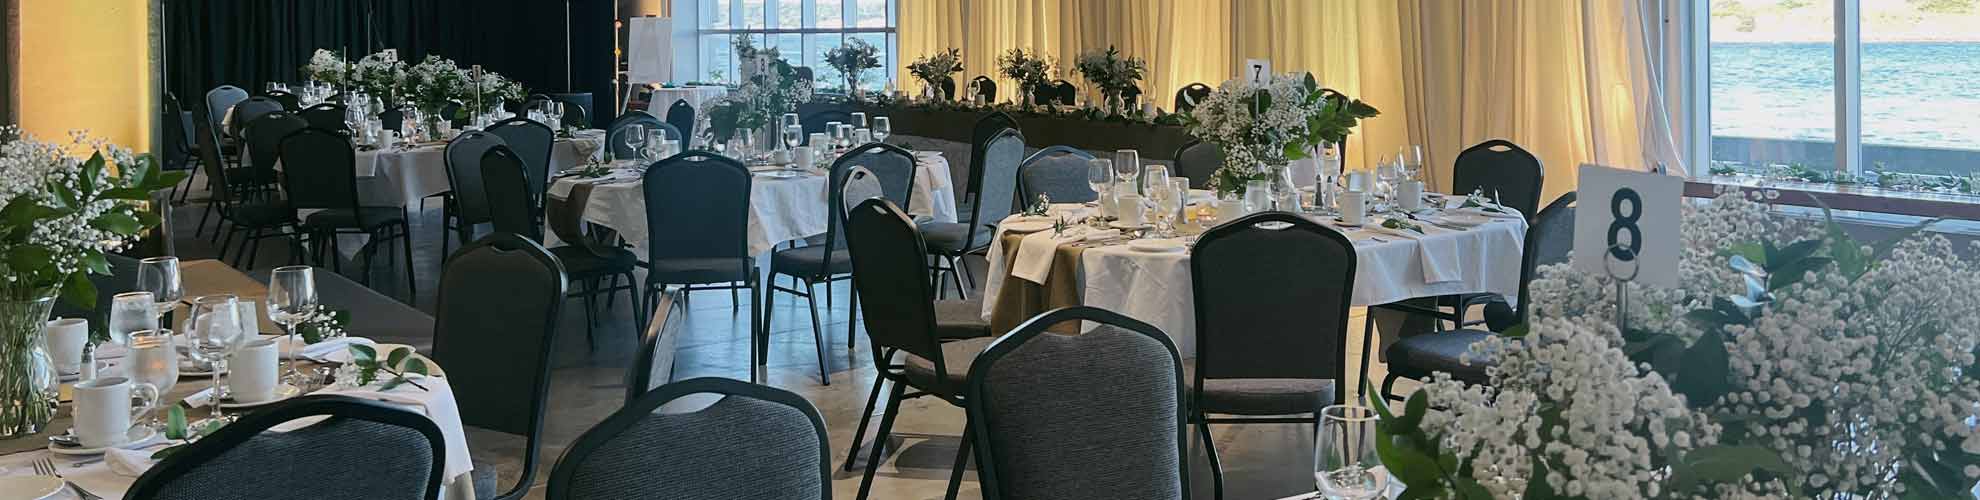 Banquet de mariage avec des tables d’invités ovales décorées et une longue table d’honneur, une petite scène pour un orchestre et de grandes fenêtres allant du sol au plafond. 